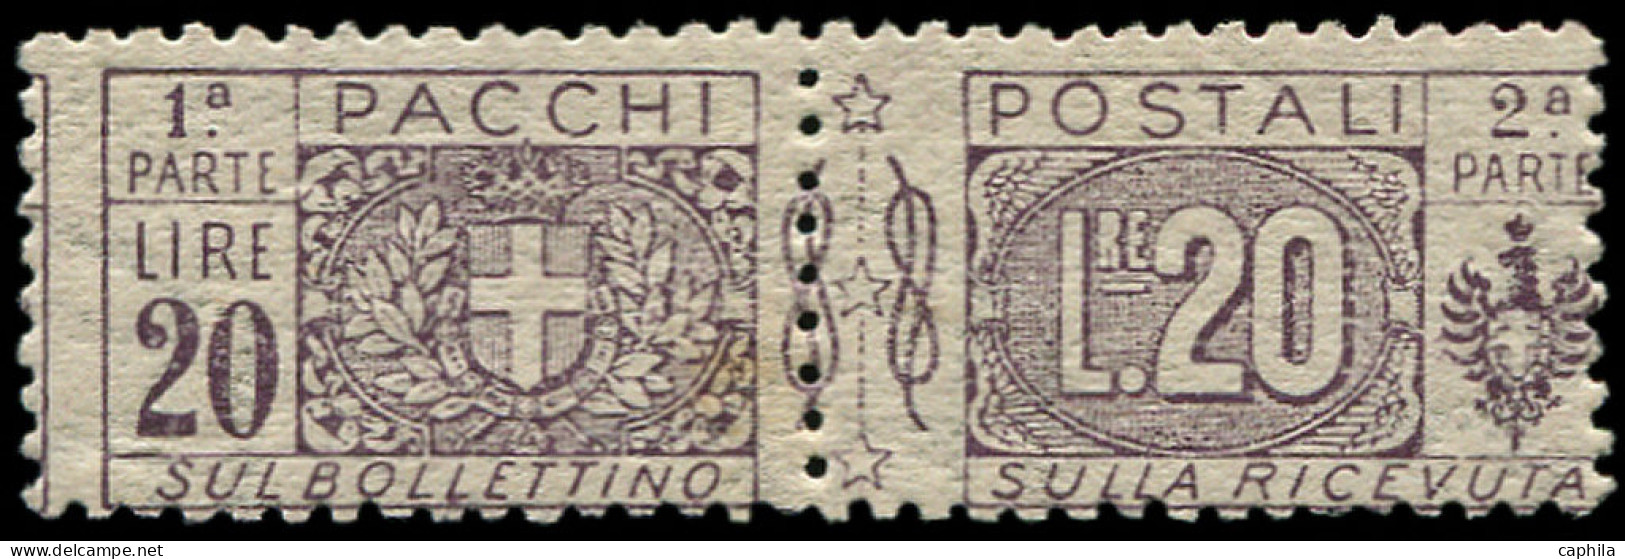 ** ITALIE - Colis Postaux - 19, 20l. Violet-brun (Sas. 19) - Postal Parcels